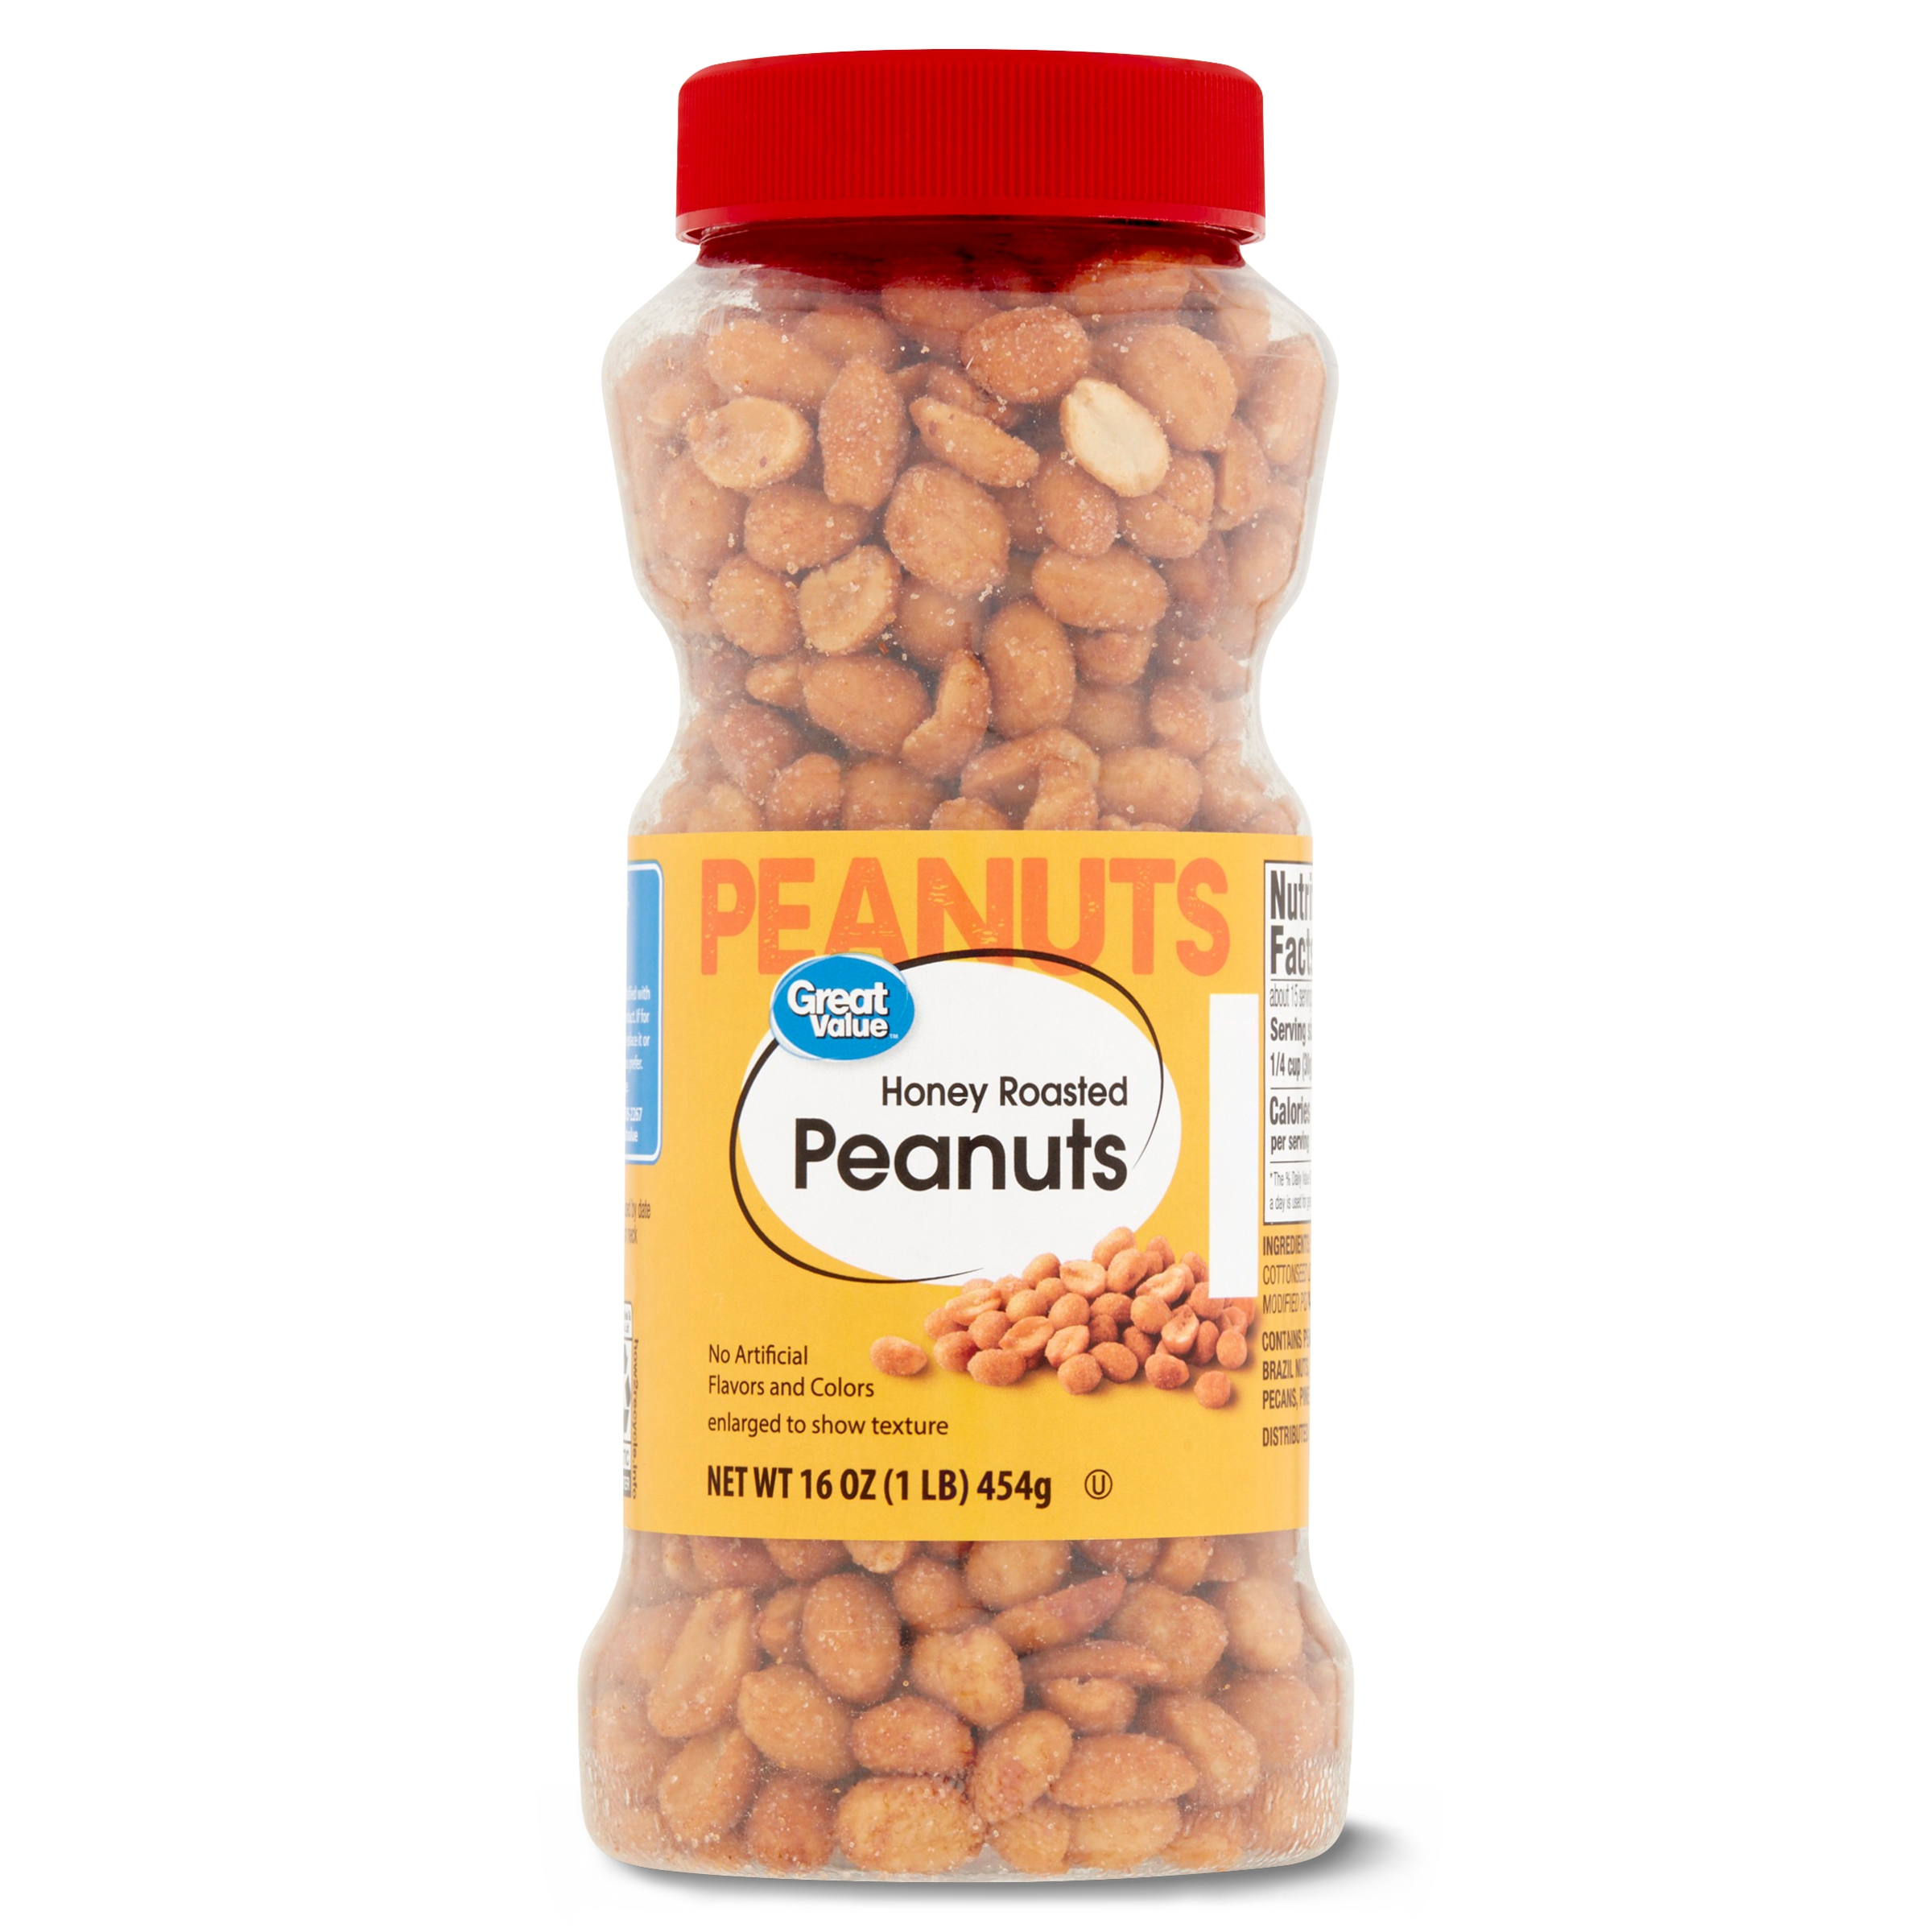 Great Value Honey Roasted Peanuts, 16 oz, Jar - image 1 of 7